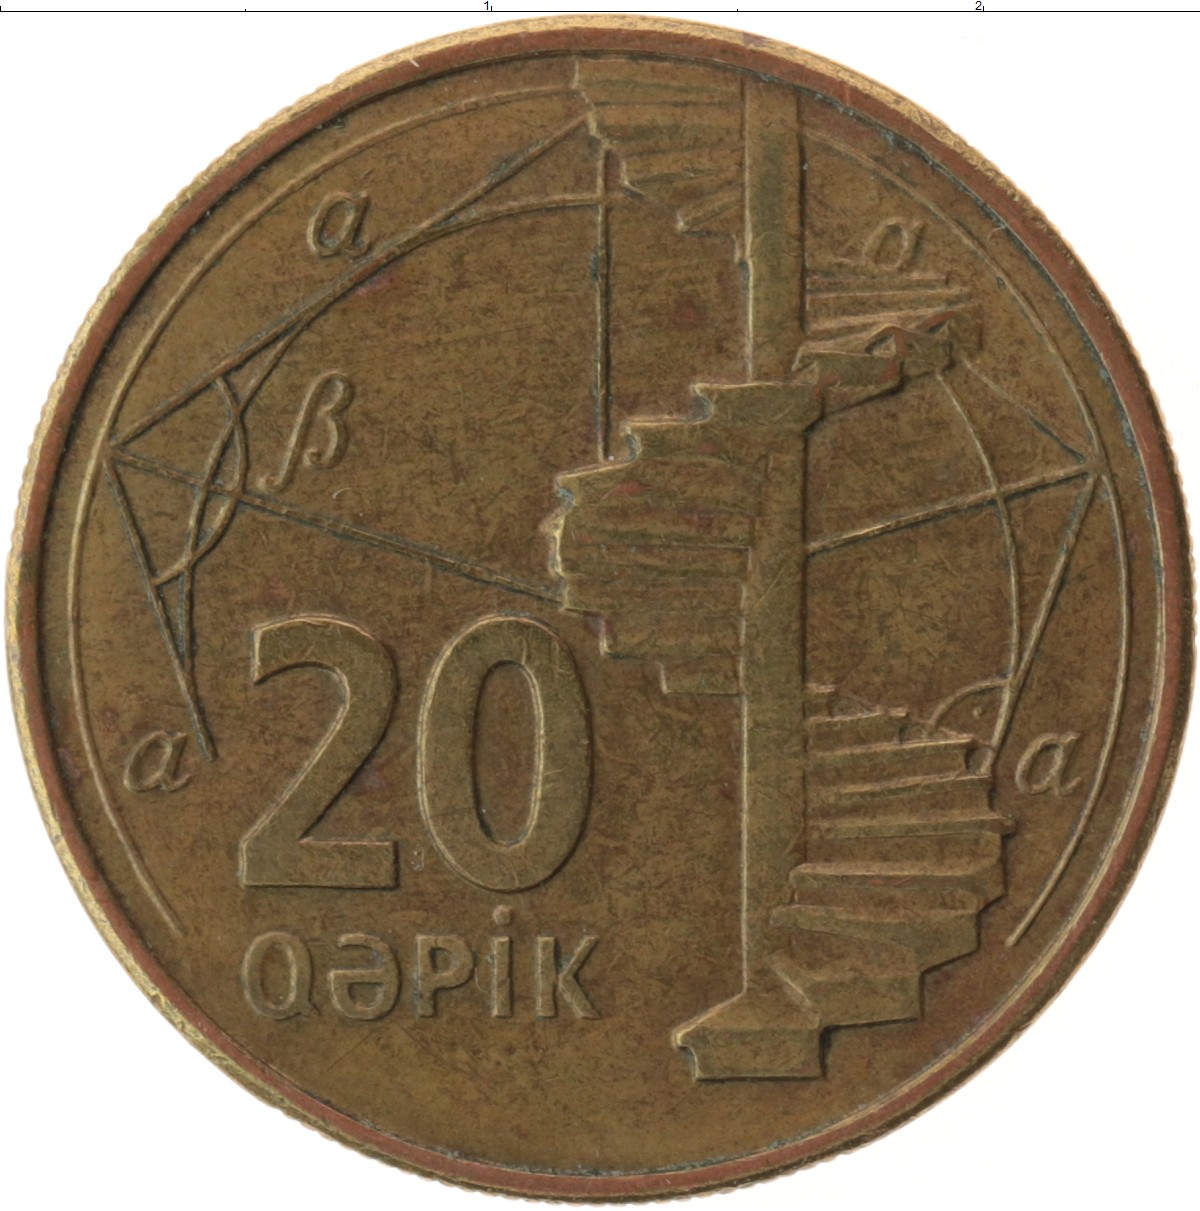 Азербайджанская денежная единица. Азербайджан 20 гяпик 2006. Азербайджанская монета 20 Qepik. Монета Азербайджан 20 гяпиков 2006. Монета Азербайджана 20 гяпиков.